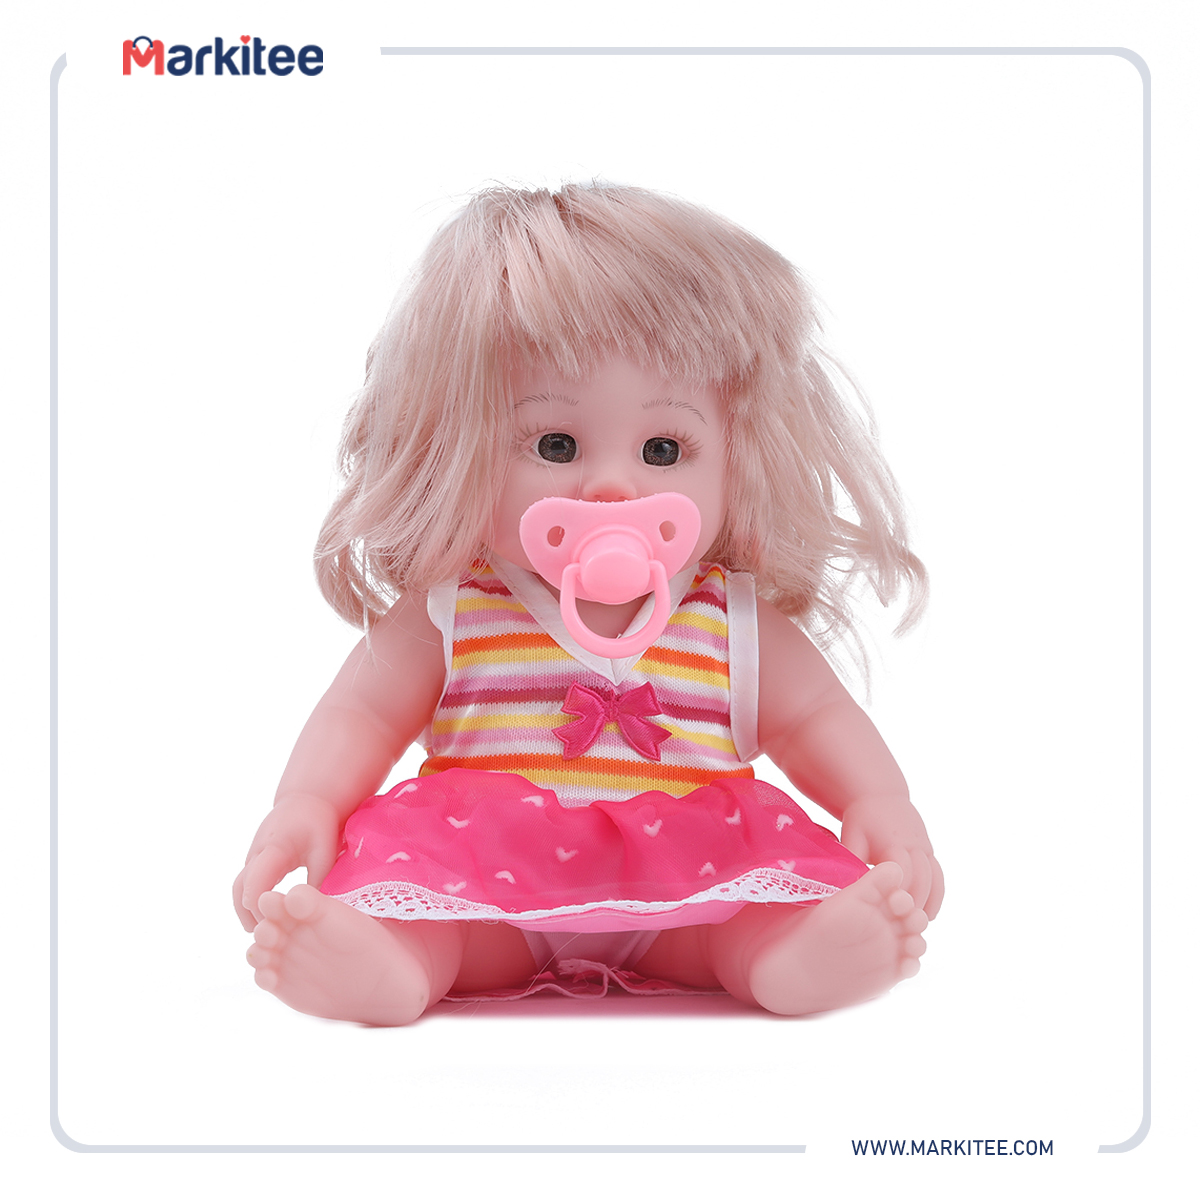 ماركيتي-markitee-20220531105857711_Markitee-Toys-Ty-395-1(10).jpg